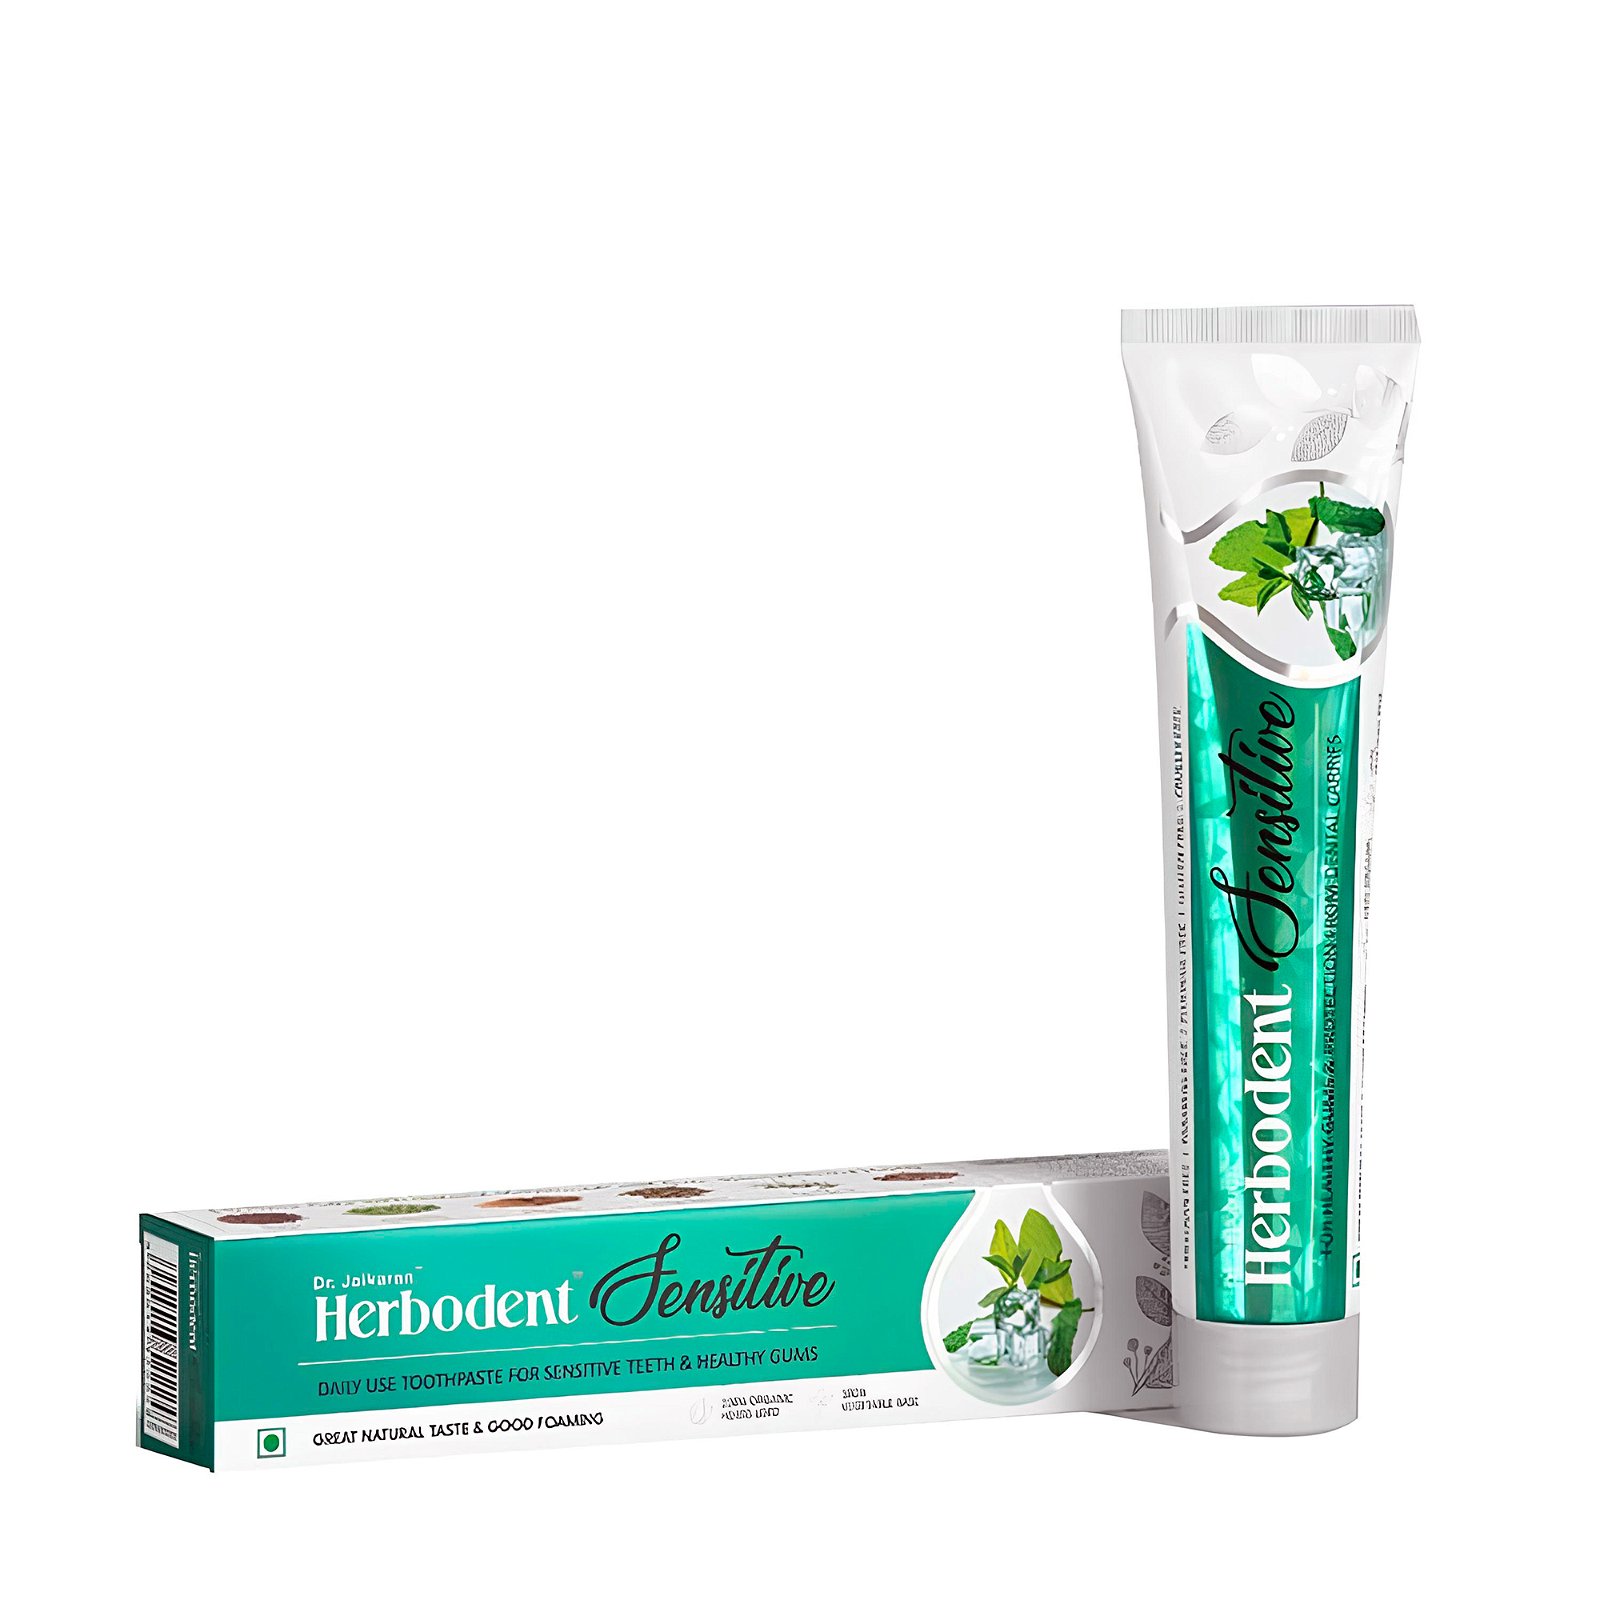 Купить Зубная паста Хербодент Сенситив (для чувствительных зубов), Dr. Jaikaran, 100 гр в интернет-магазине #store#